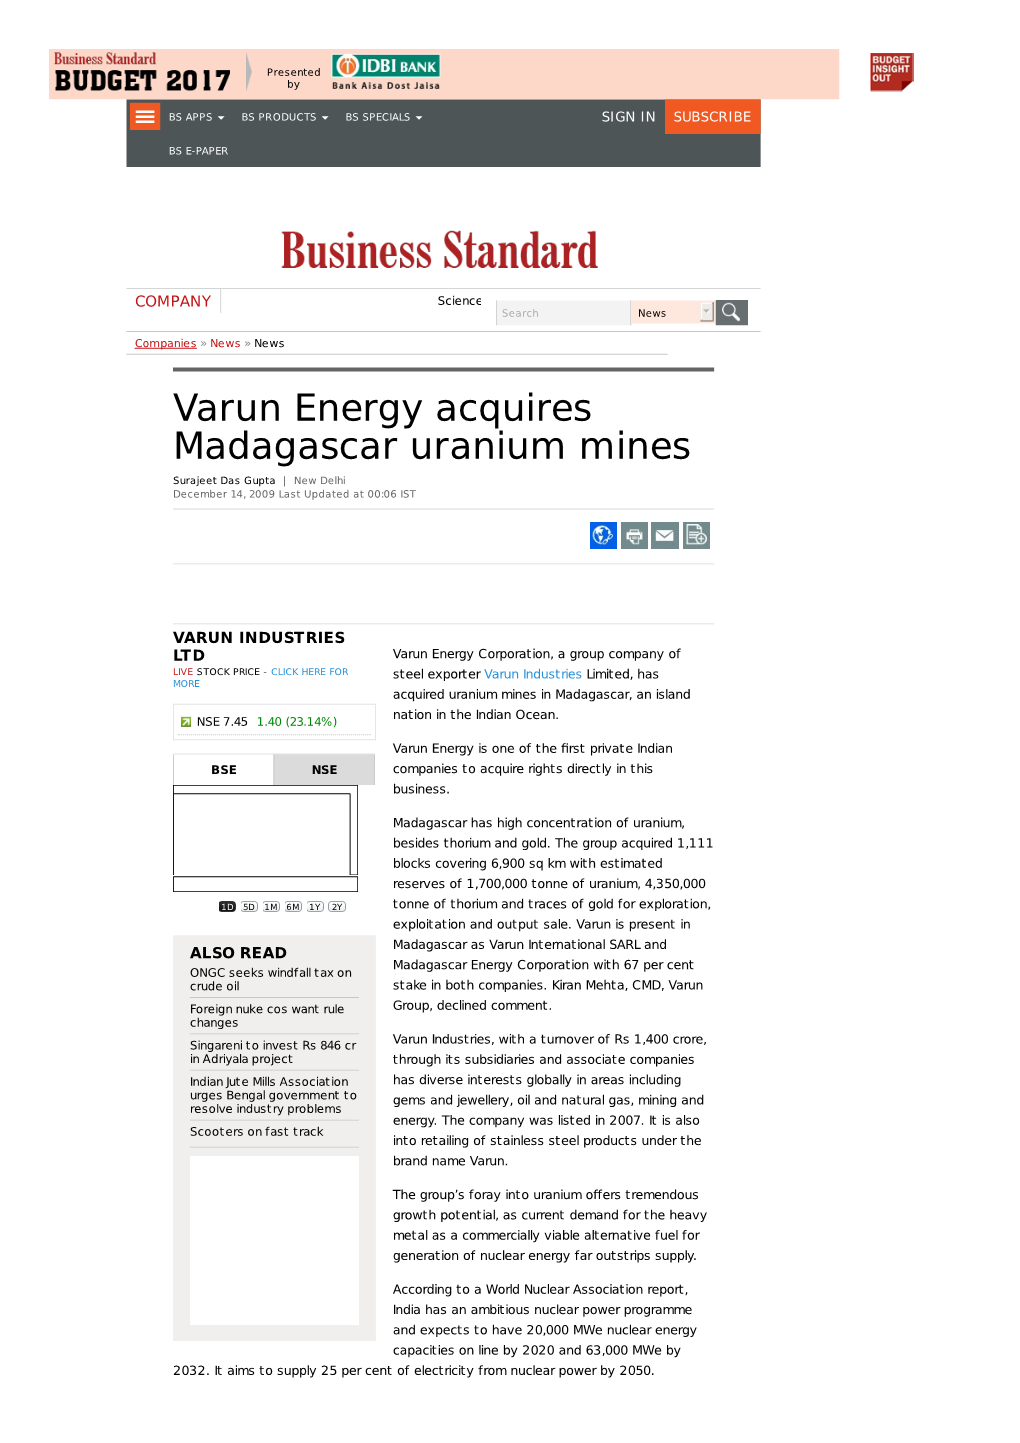 Varun Energy Acquires Madagascar Uranium Mines Surajeet Das Gupta | New Delhi December 14, 2009 Last Updated at 00:06 IST